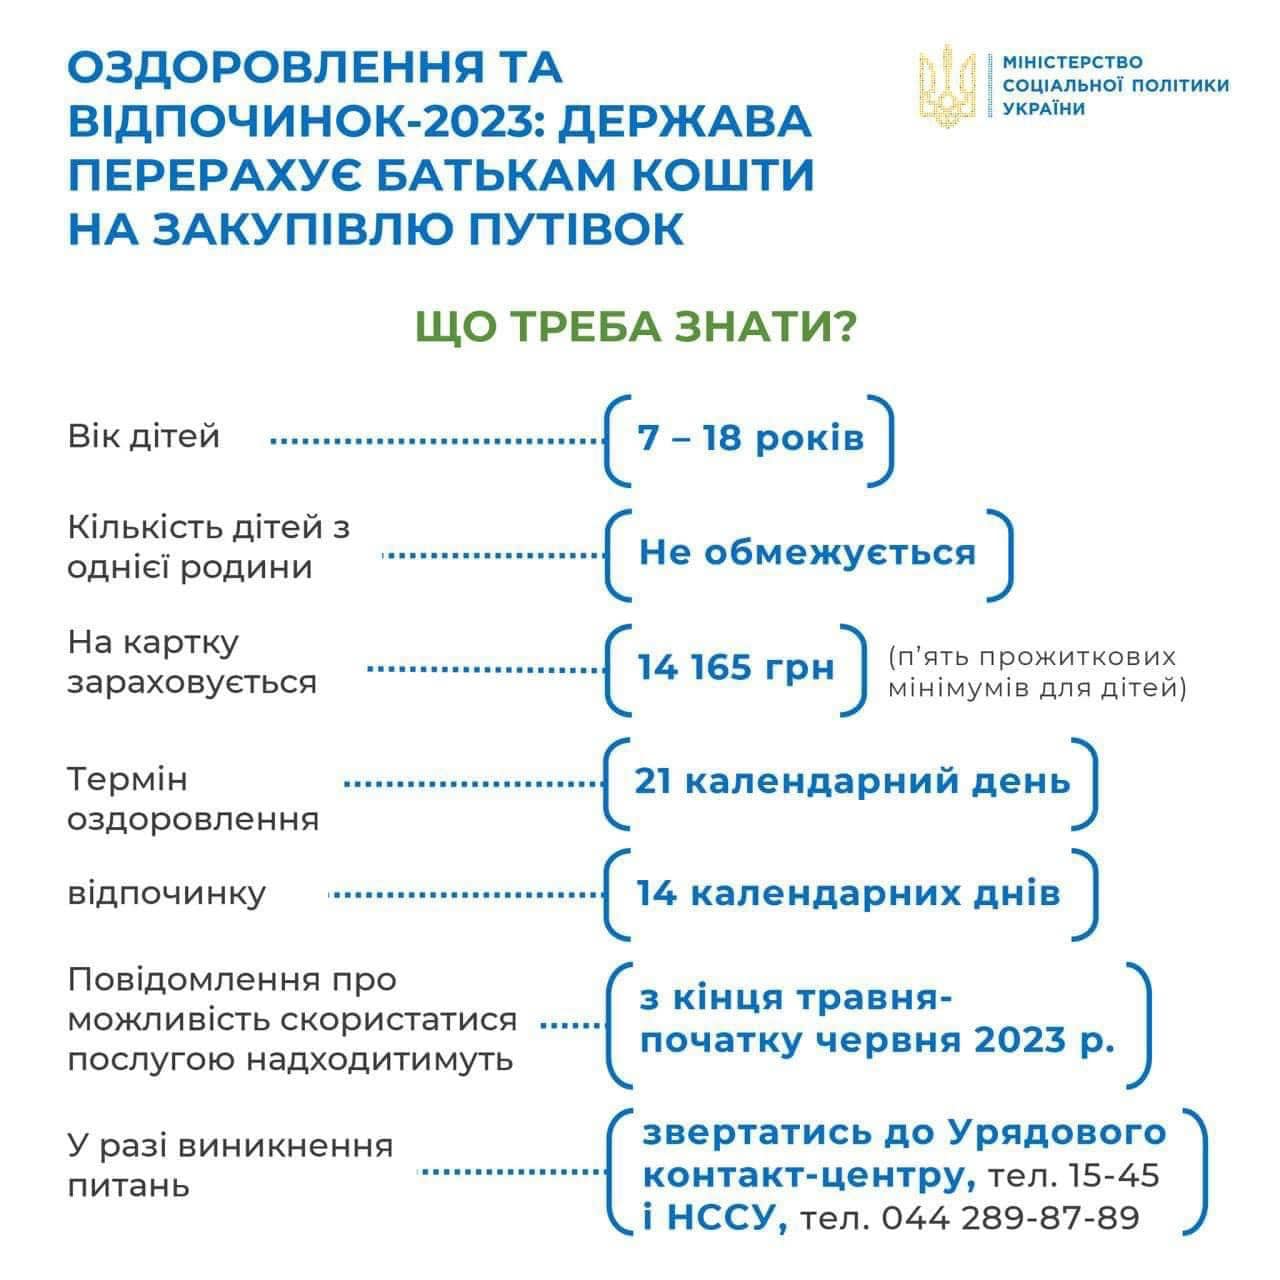 Украинцы могут получить 14 тыс. грн на отдых детей